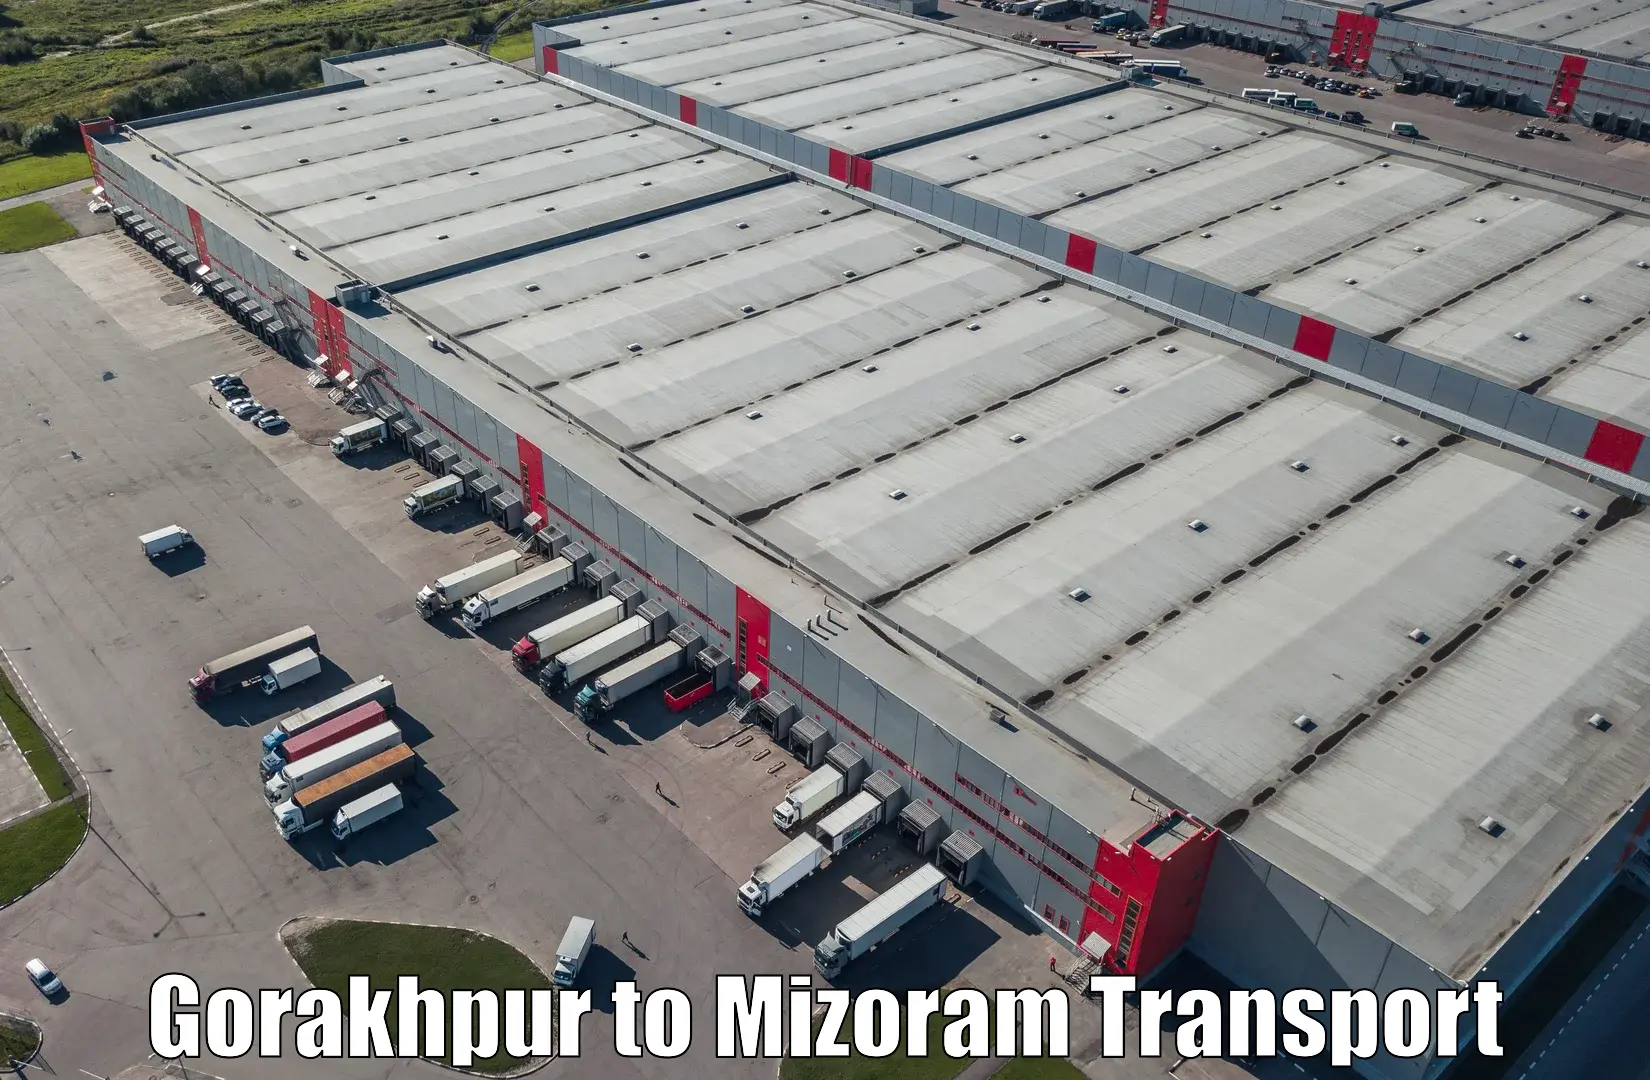 Delivery service Gorakhpur to Mizoram